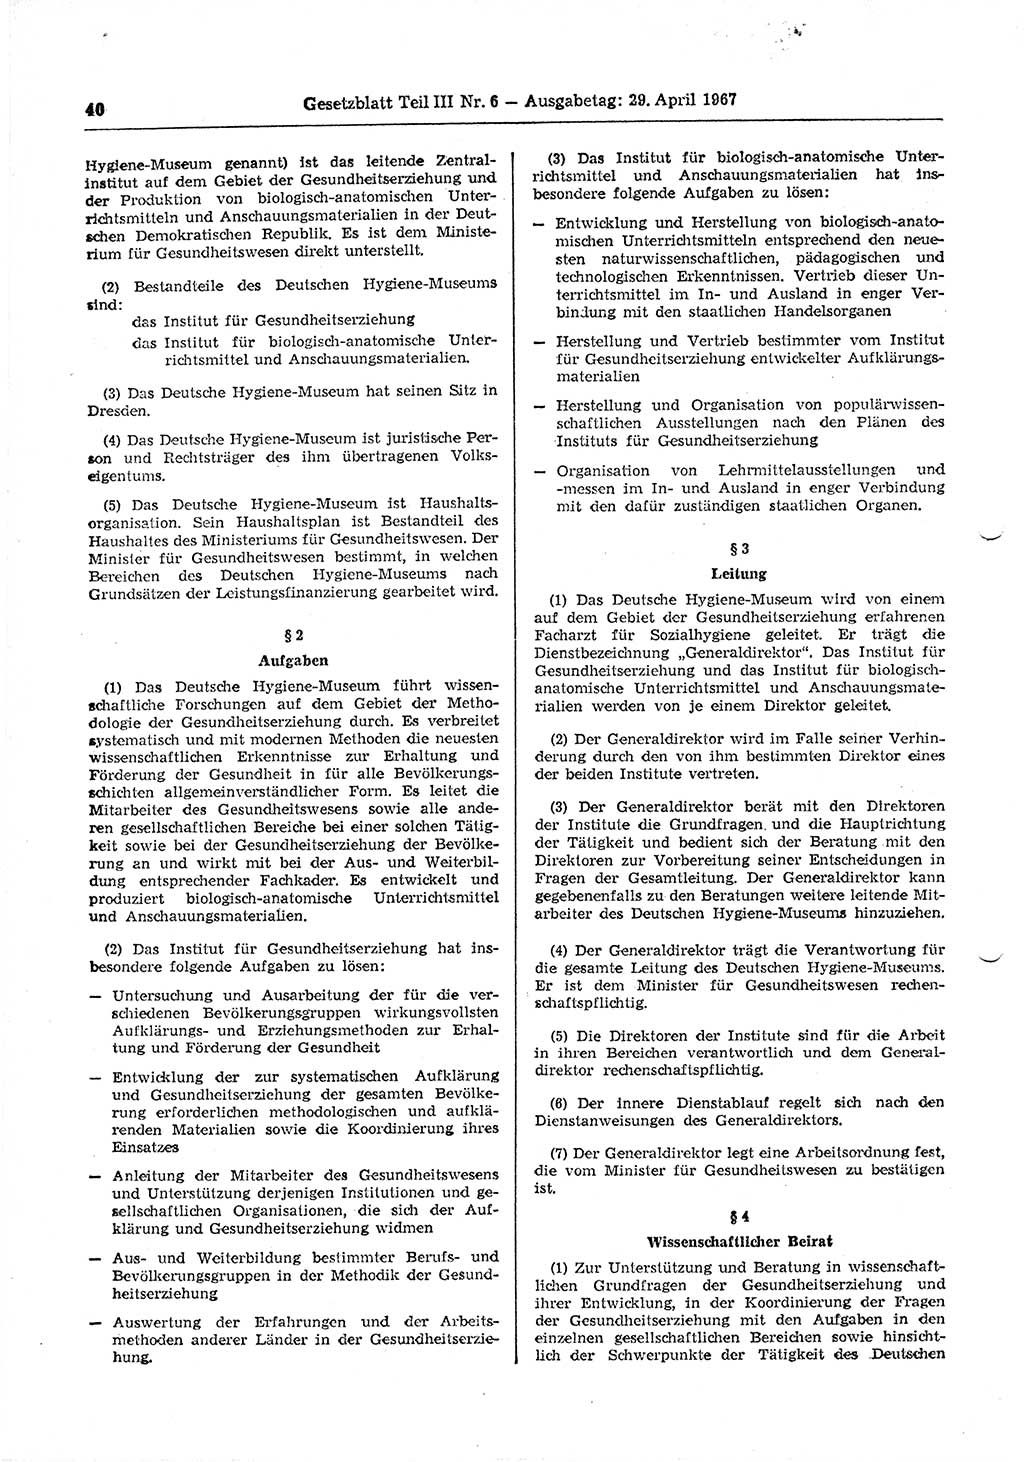 Gesetzblatt (GBl.) der Deutschen Demokratischen Republik (DDR) Teil ⅠⅠⅠ 1967, Seite 40 (GBl. DDR ⅠⅠⅠ 1967, S. 40)